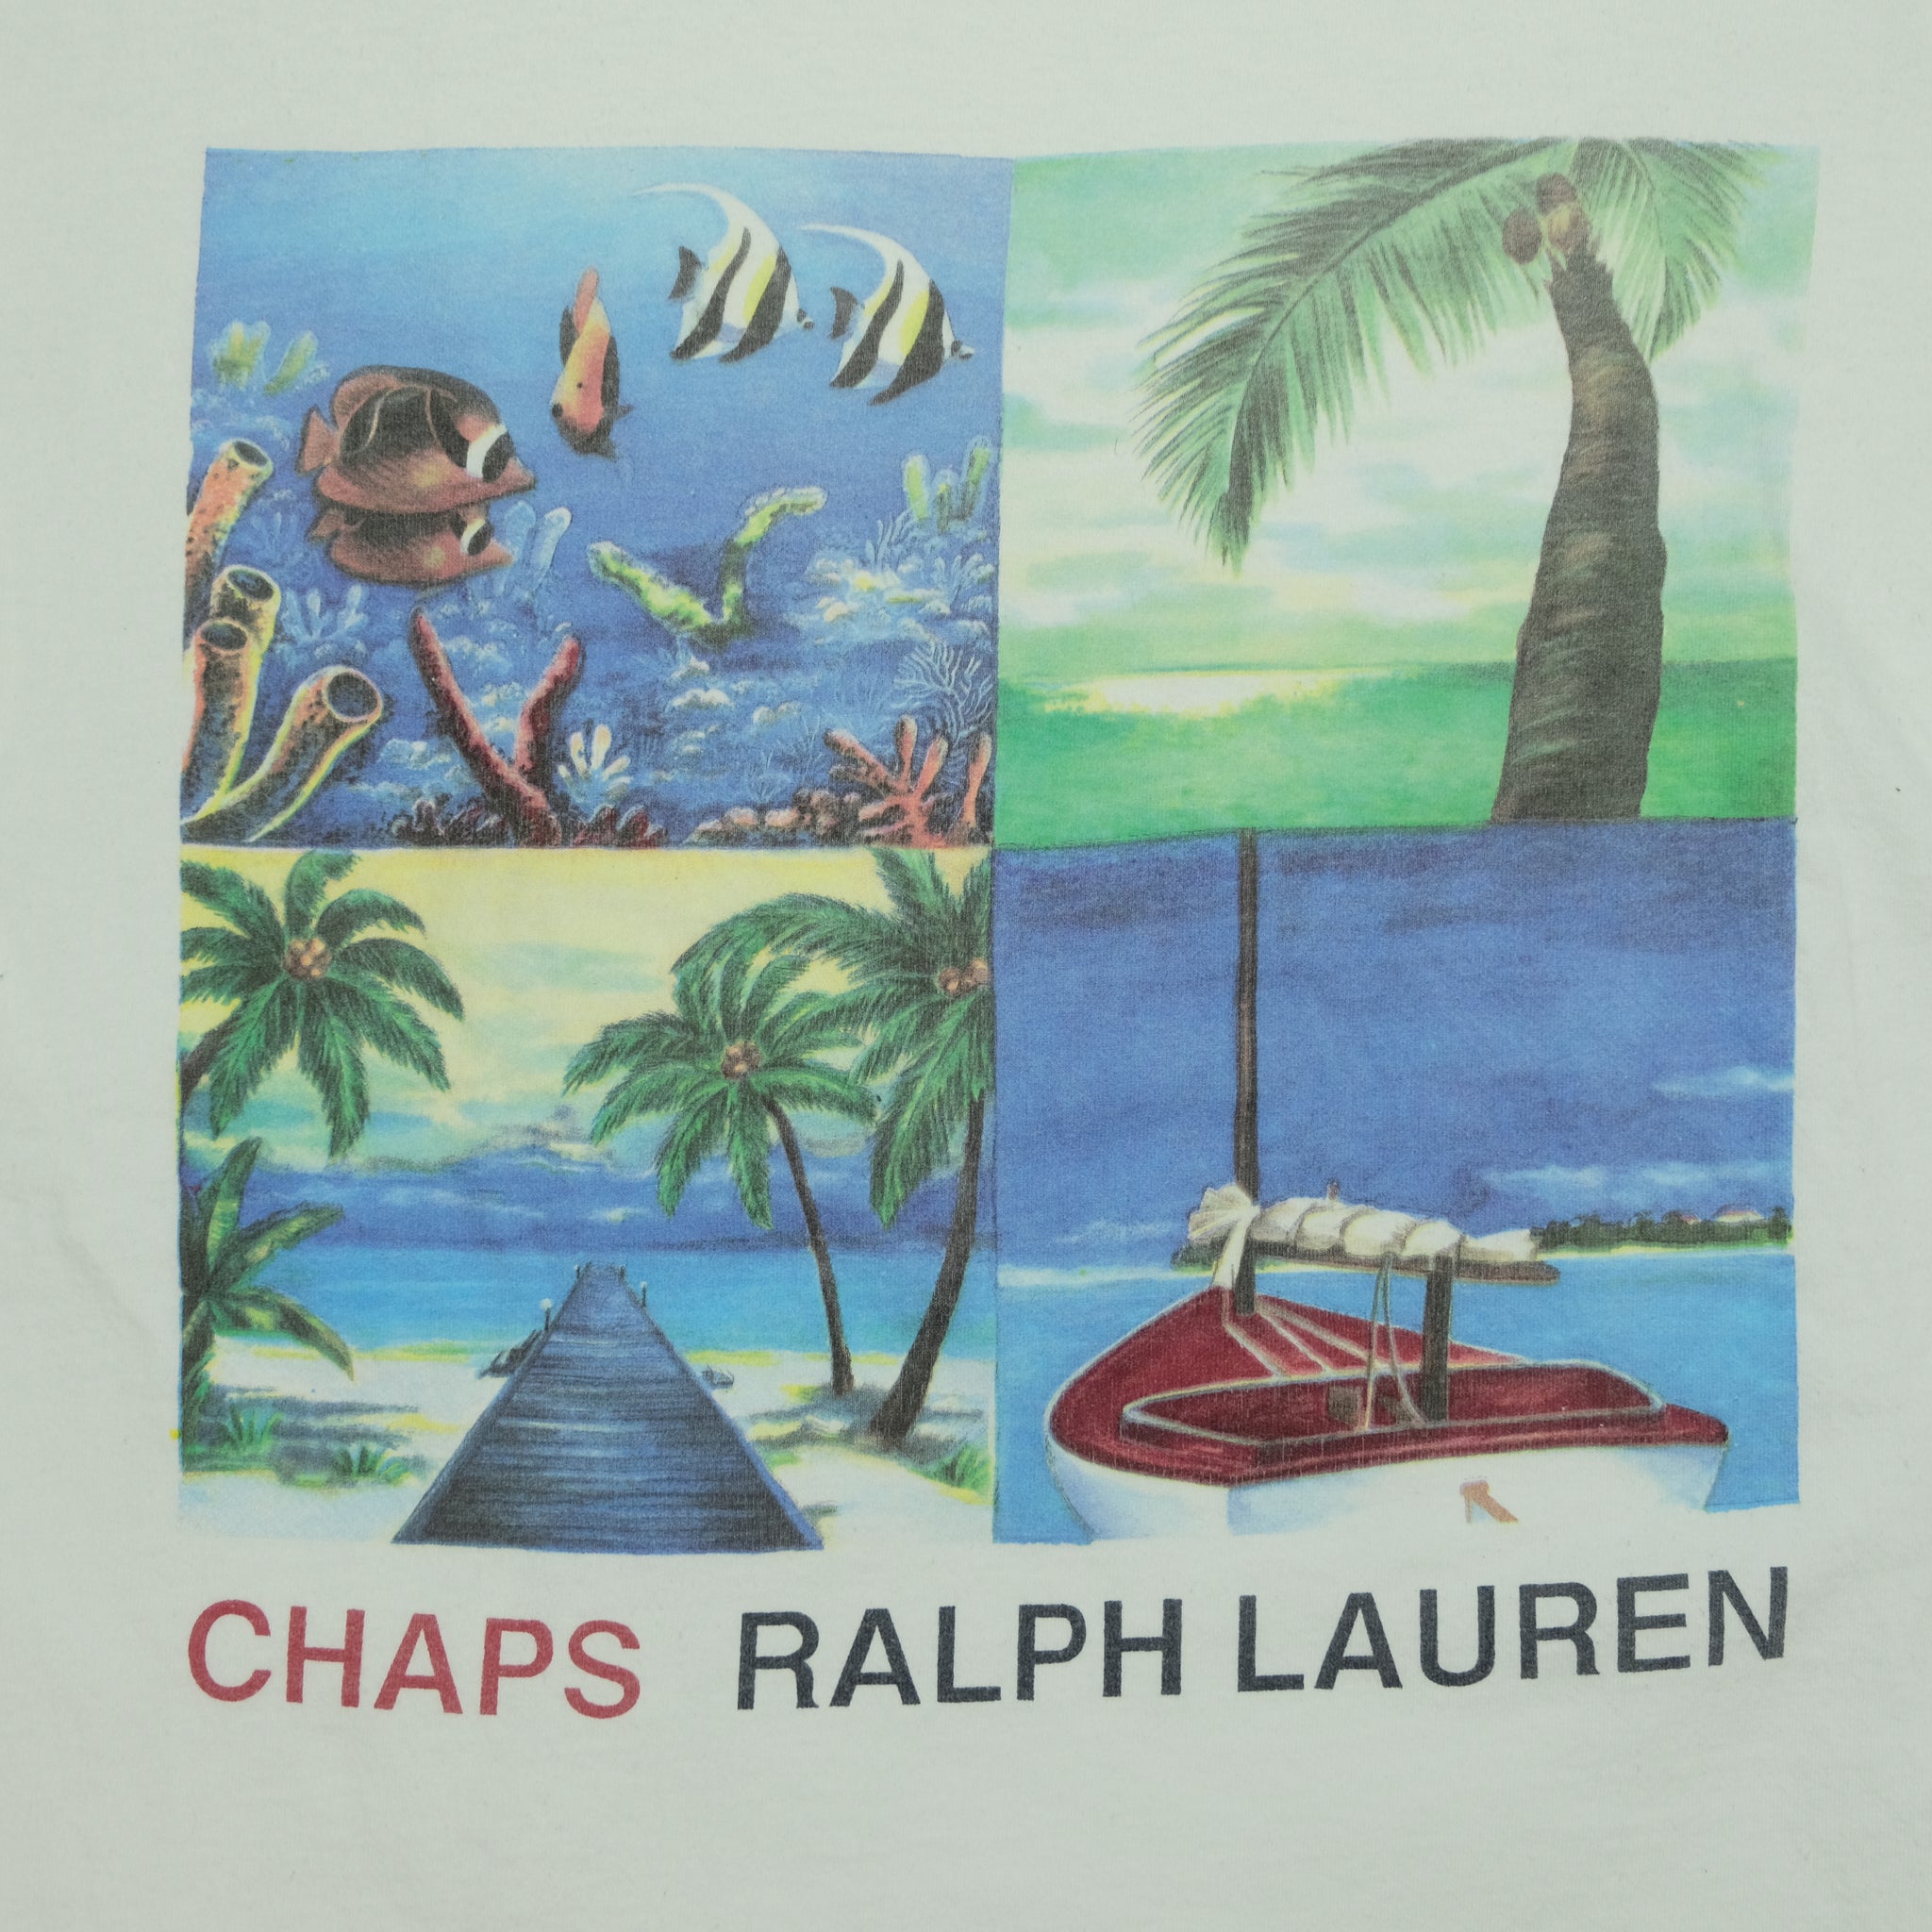 Vintage Chaps Ralph Lauren Beach Outdoors Tee